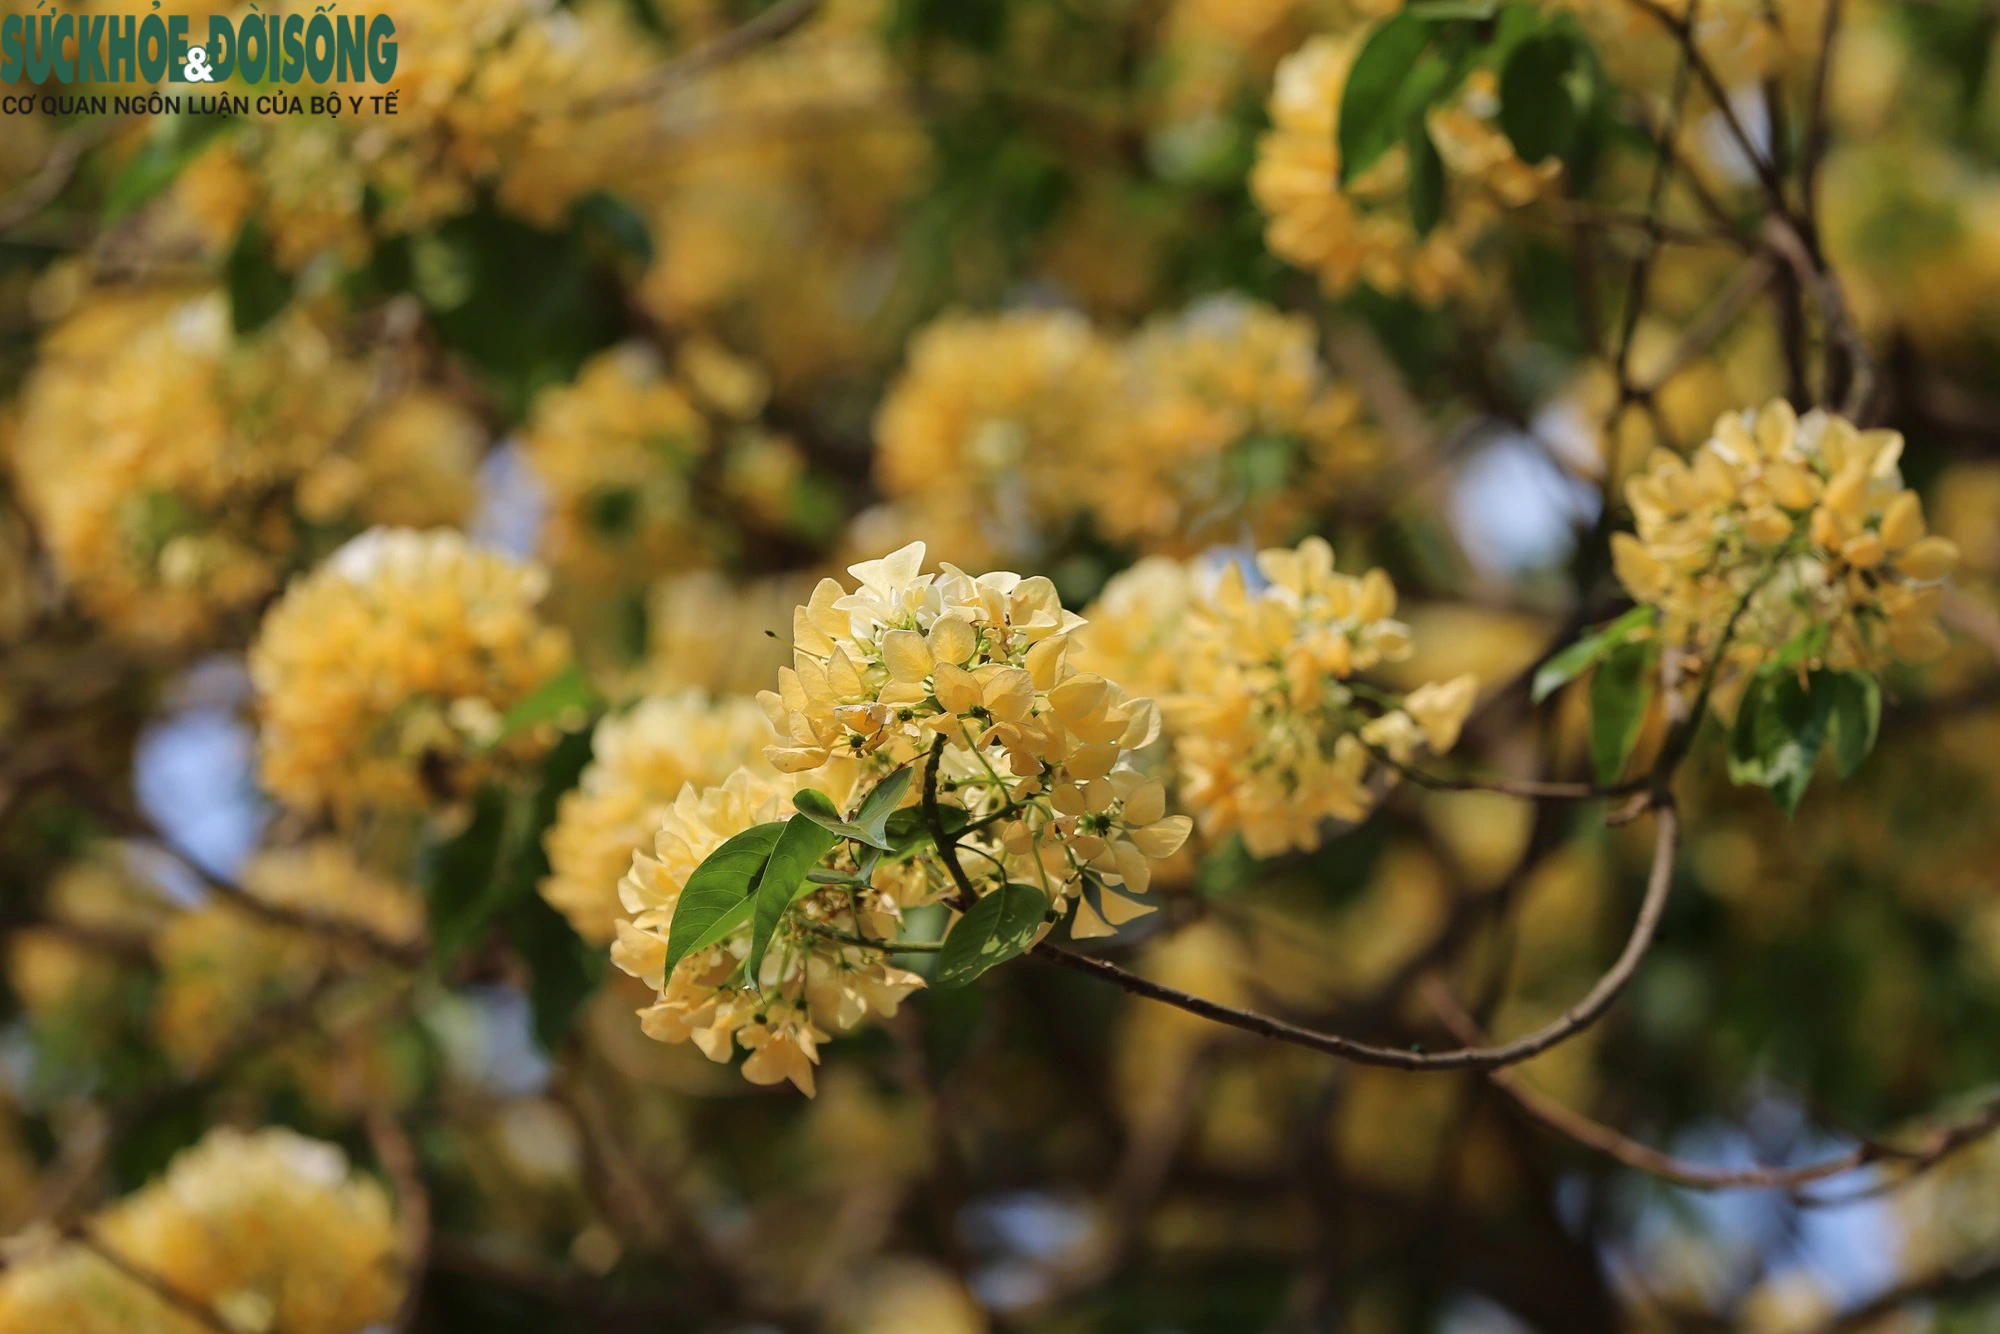 Cây hoa bún hơn 300 tuổi khoe sắc vàng rực một góc phố- Ảnh 7.